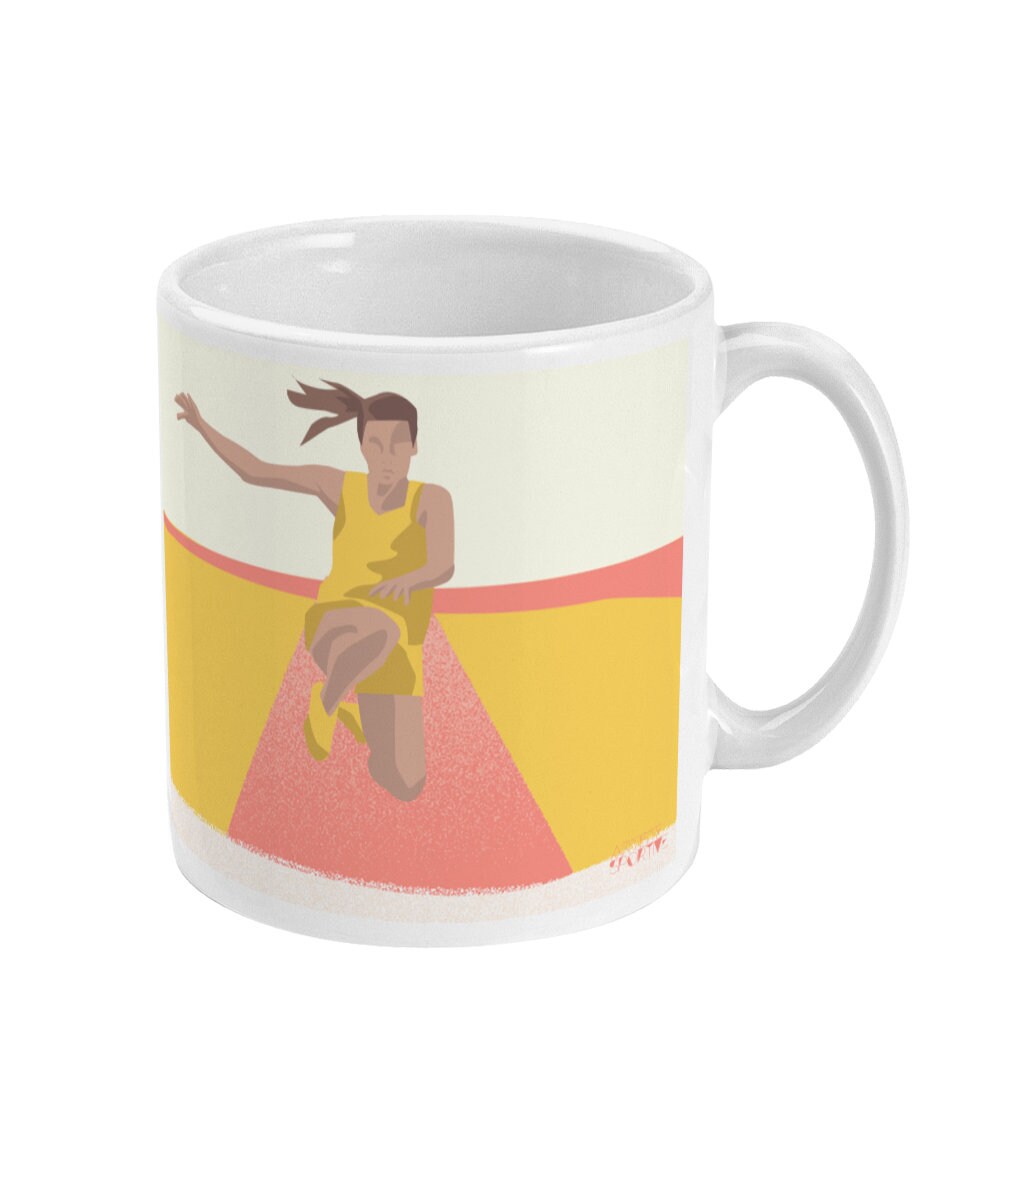 Leichtathletik-Tasse oder Tasse „Athletischer Sprung der Frauen“ – personalisierbar